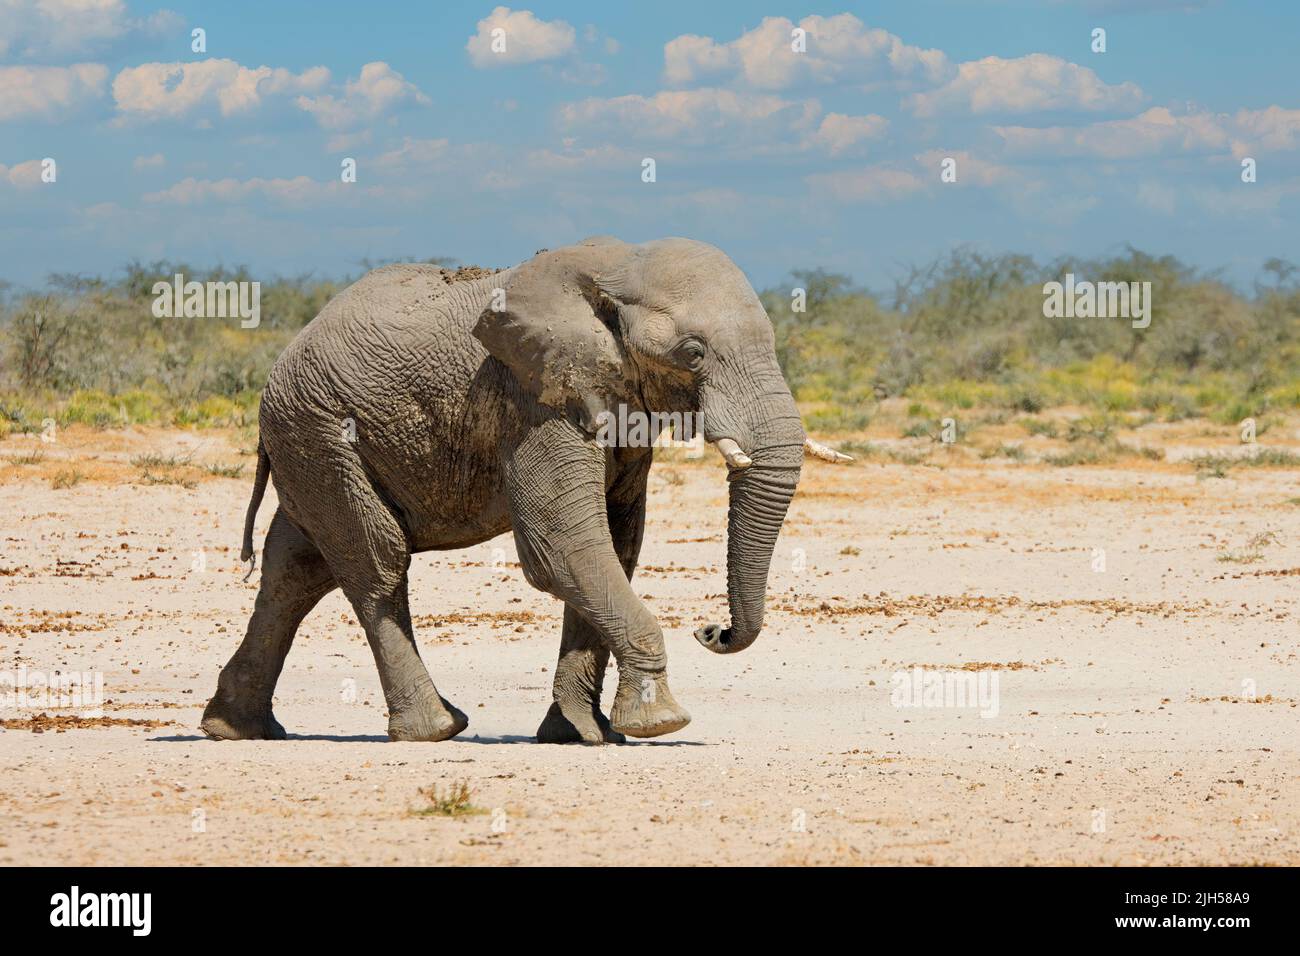 Large African elephant (Loxodonta africana) walking, Etosha National Park, Namibia Stock Photo